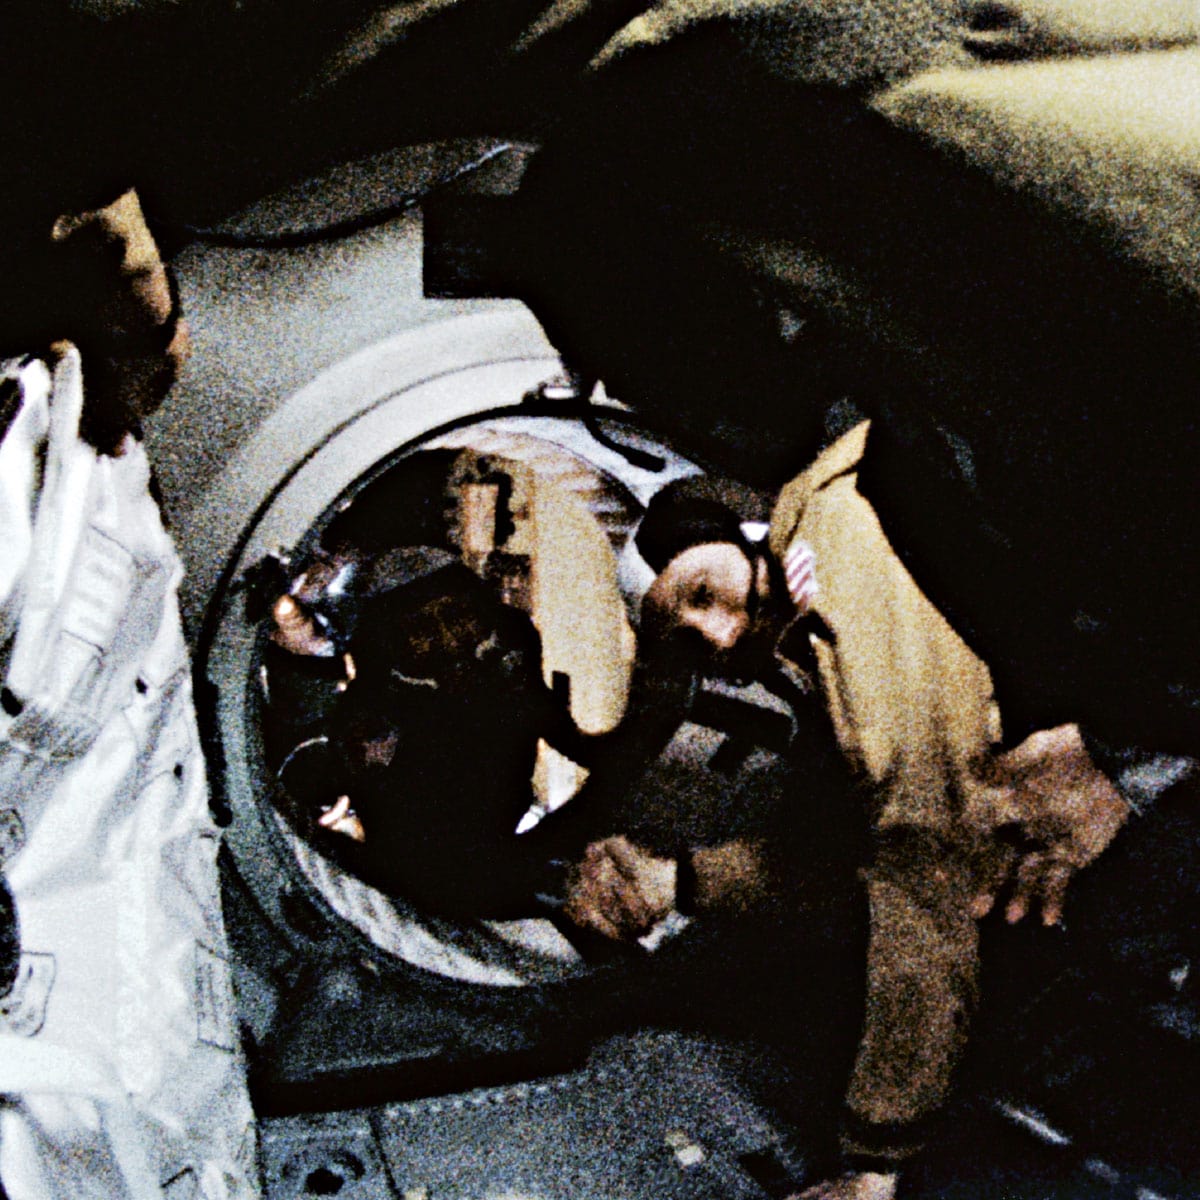 Thomas P. Stafford y Aleksey A. Leonov se encuentran entre ambas estaciones espaciales